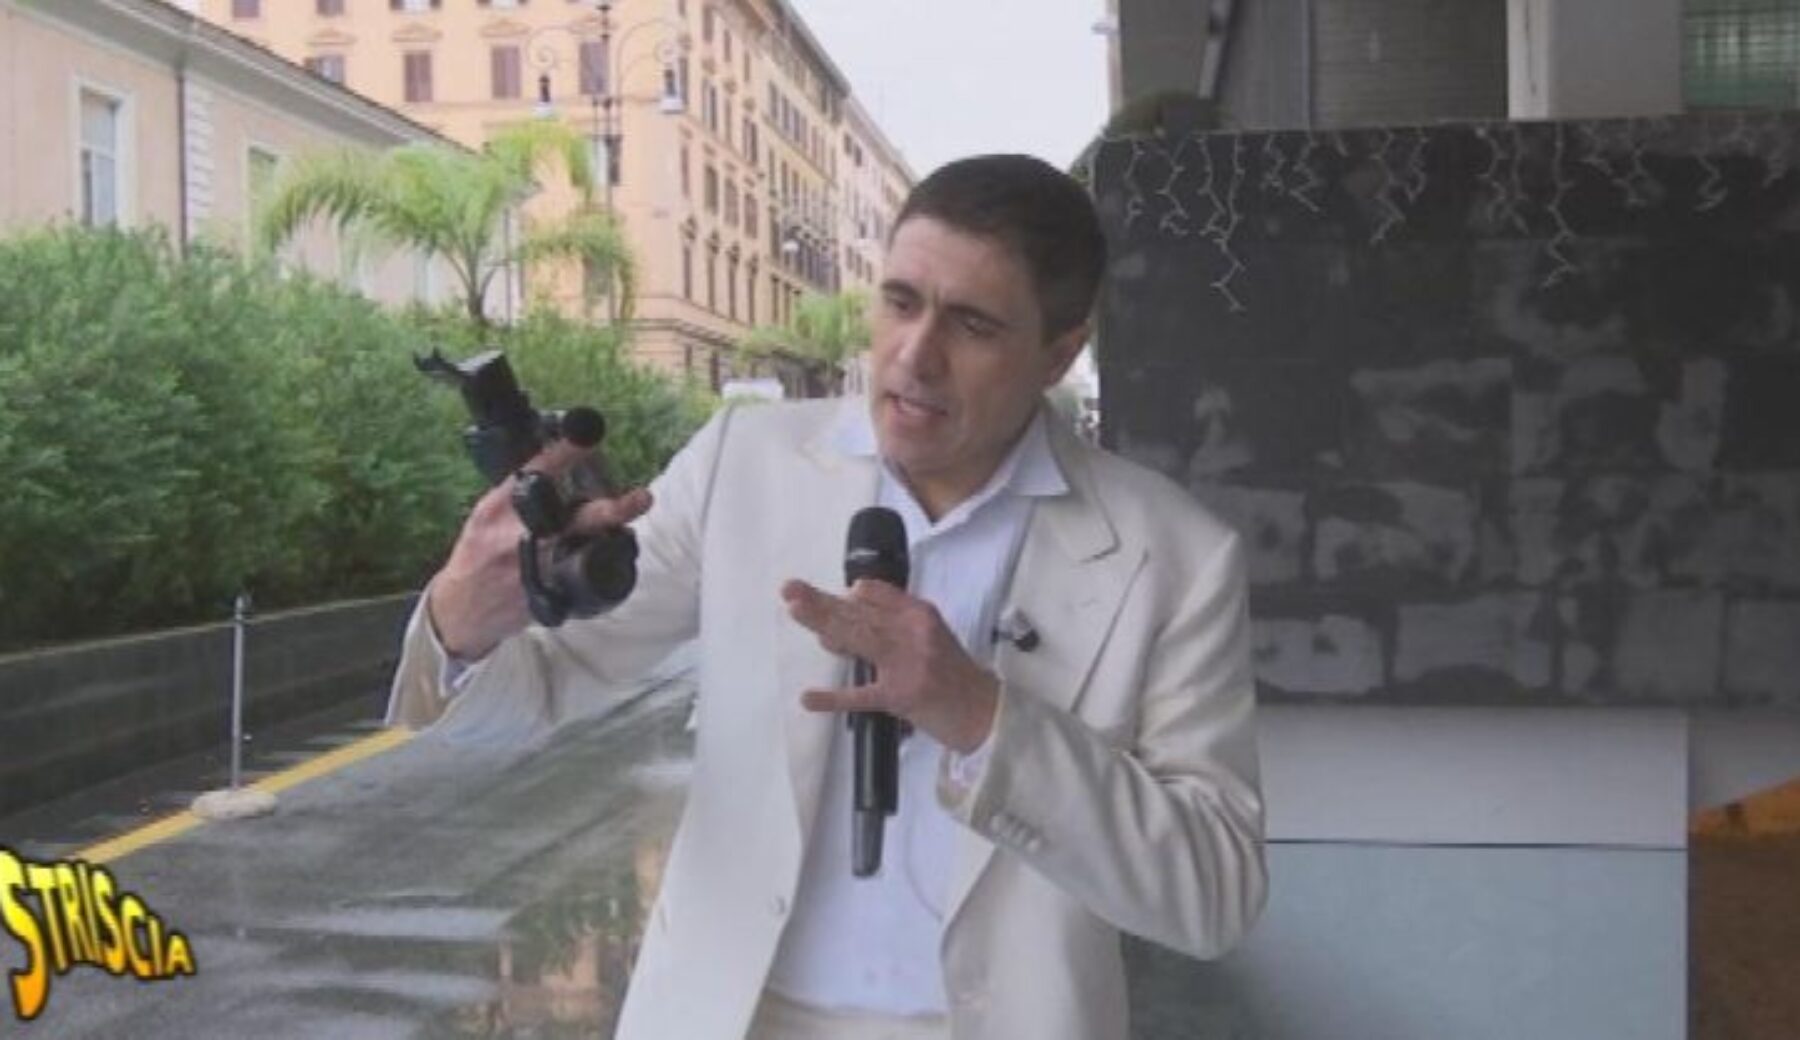 Moreno Morello aggredito a Roma:  a Striscia la notizia il servizio completo